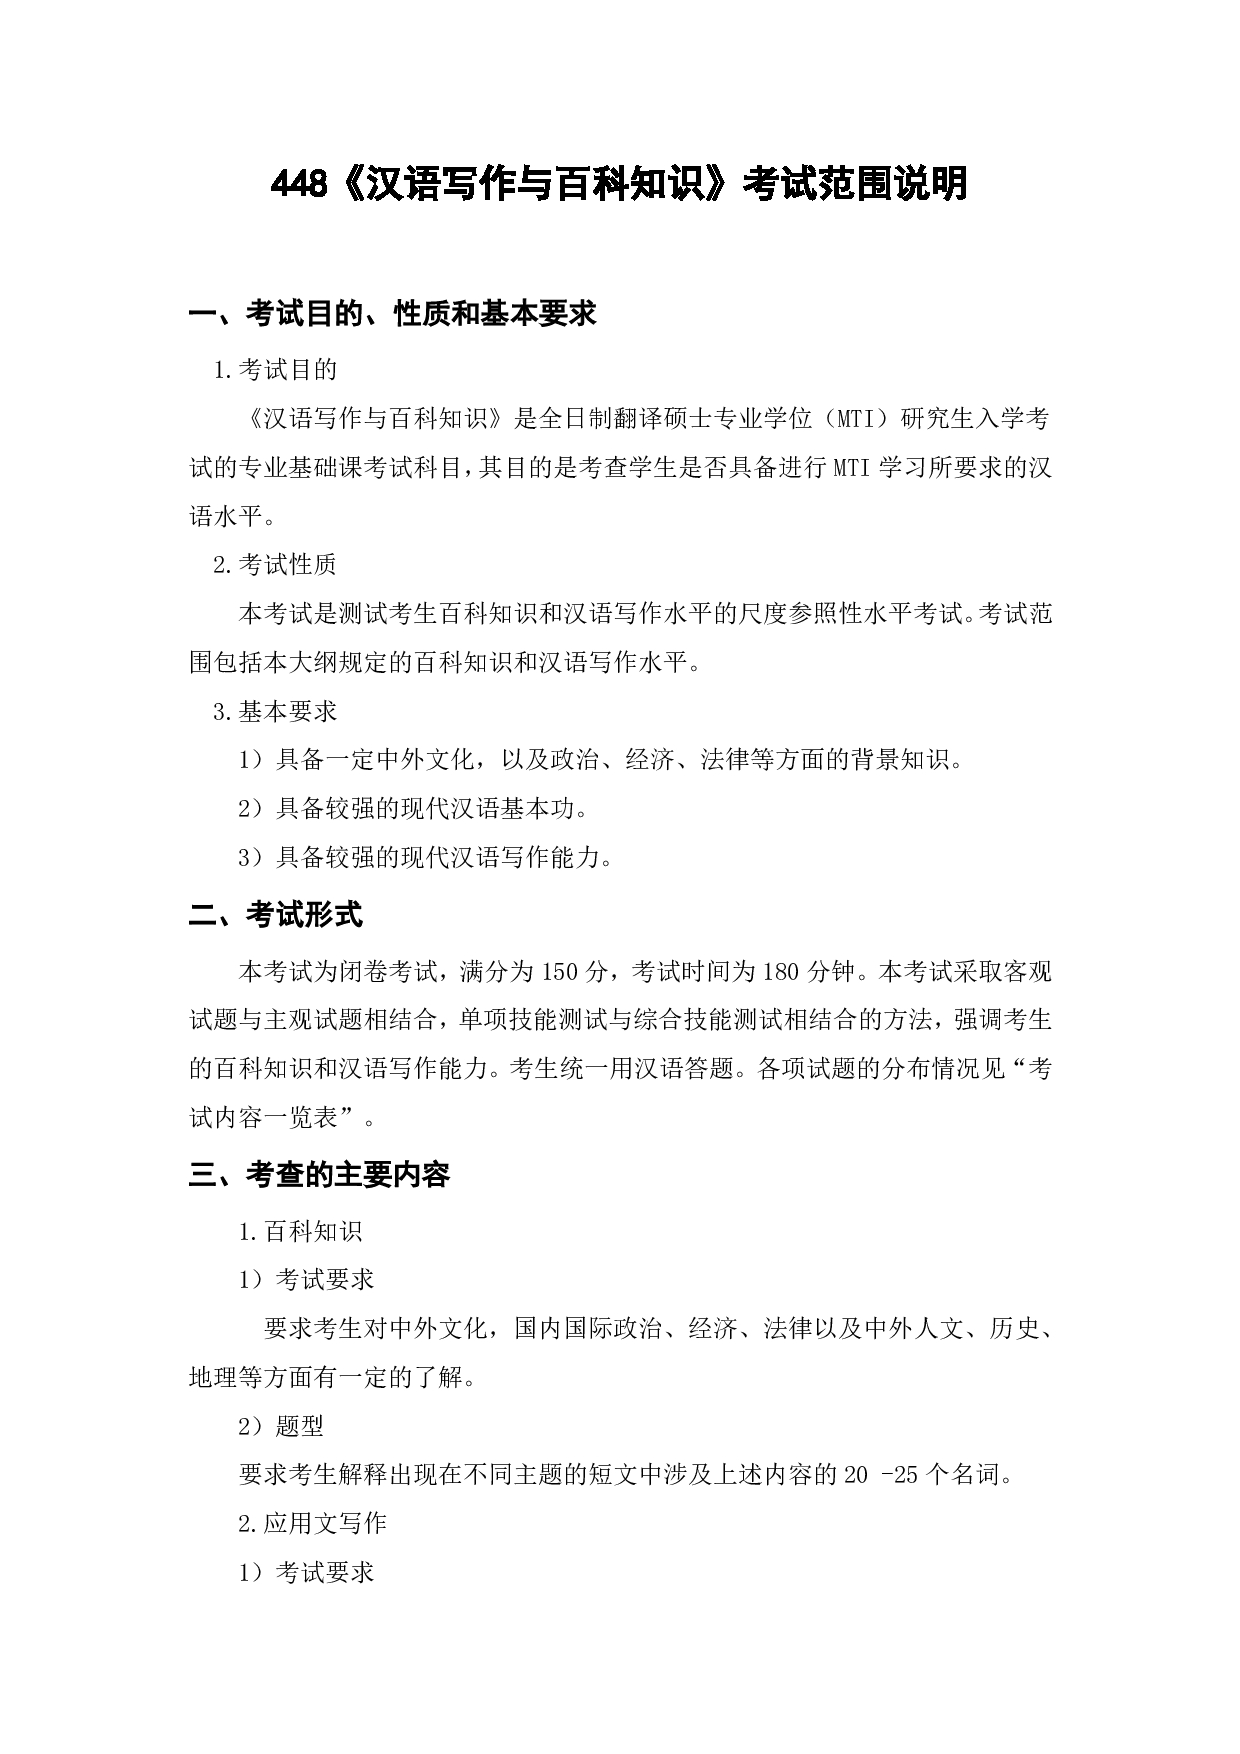 上海海洋大学2023年考研自命题科目 448《汉语写作与百科知识》 考试范围第1页